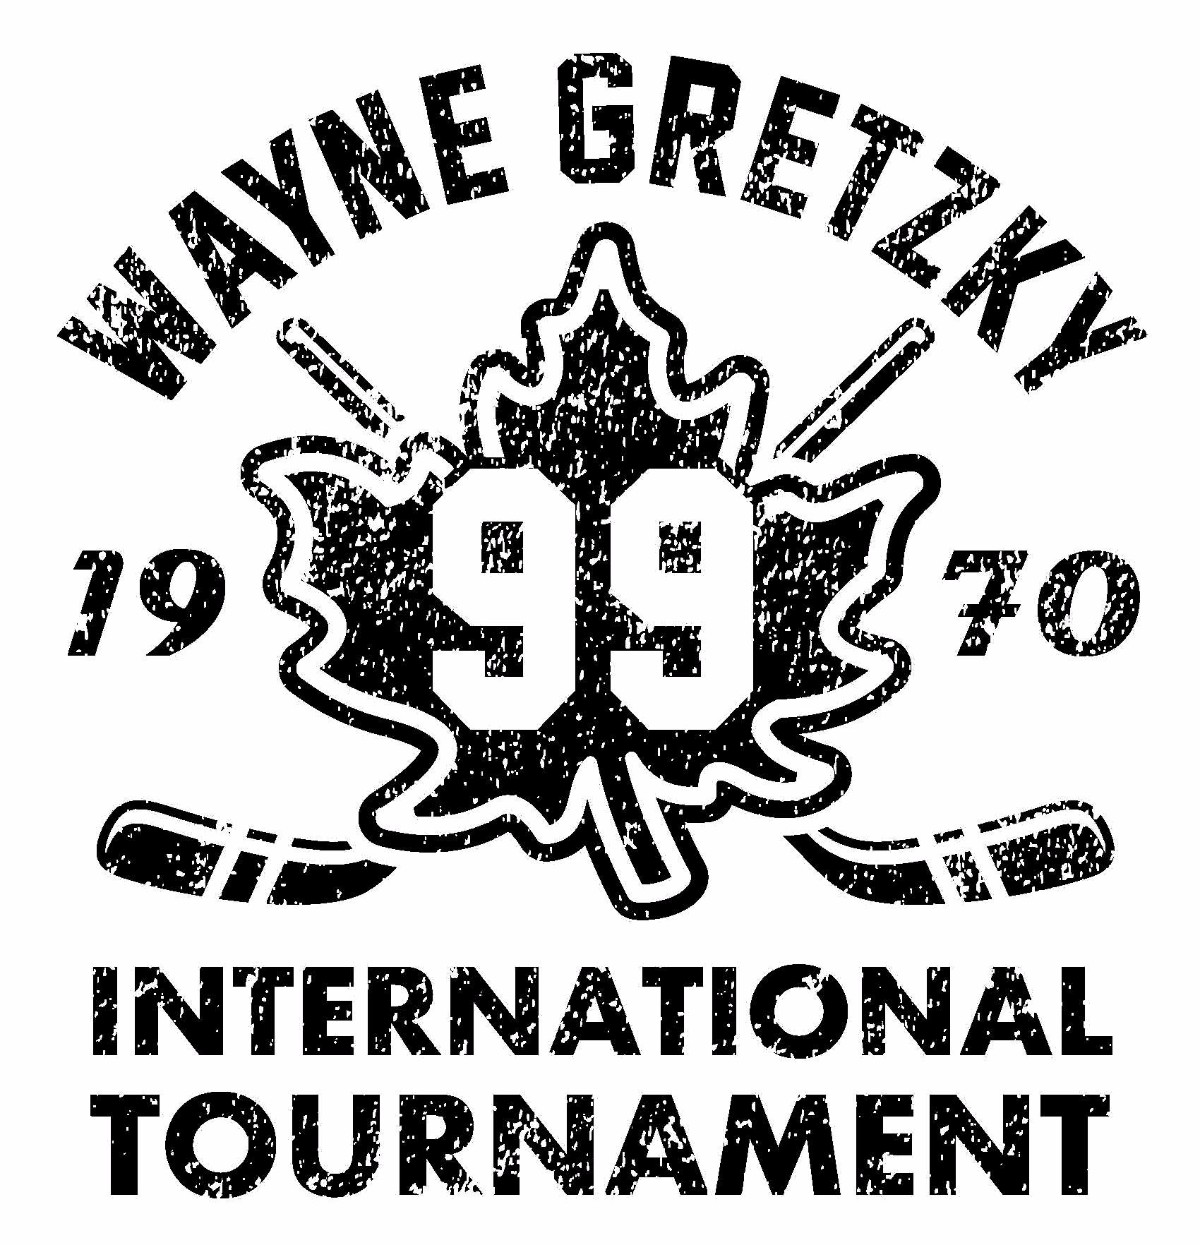 Wayne Gretzky International Tournament